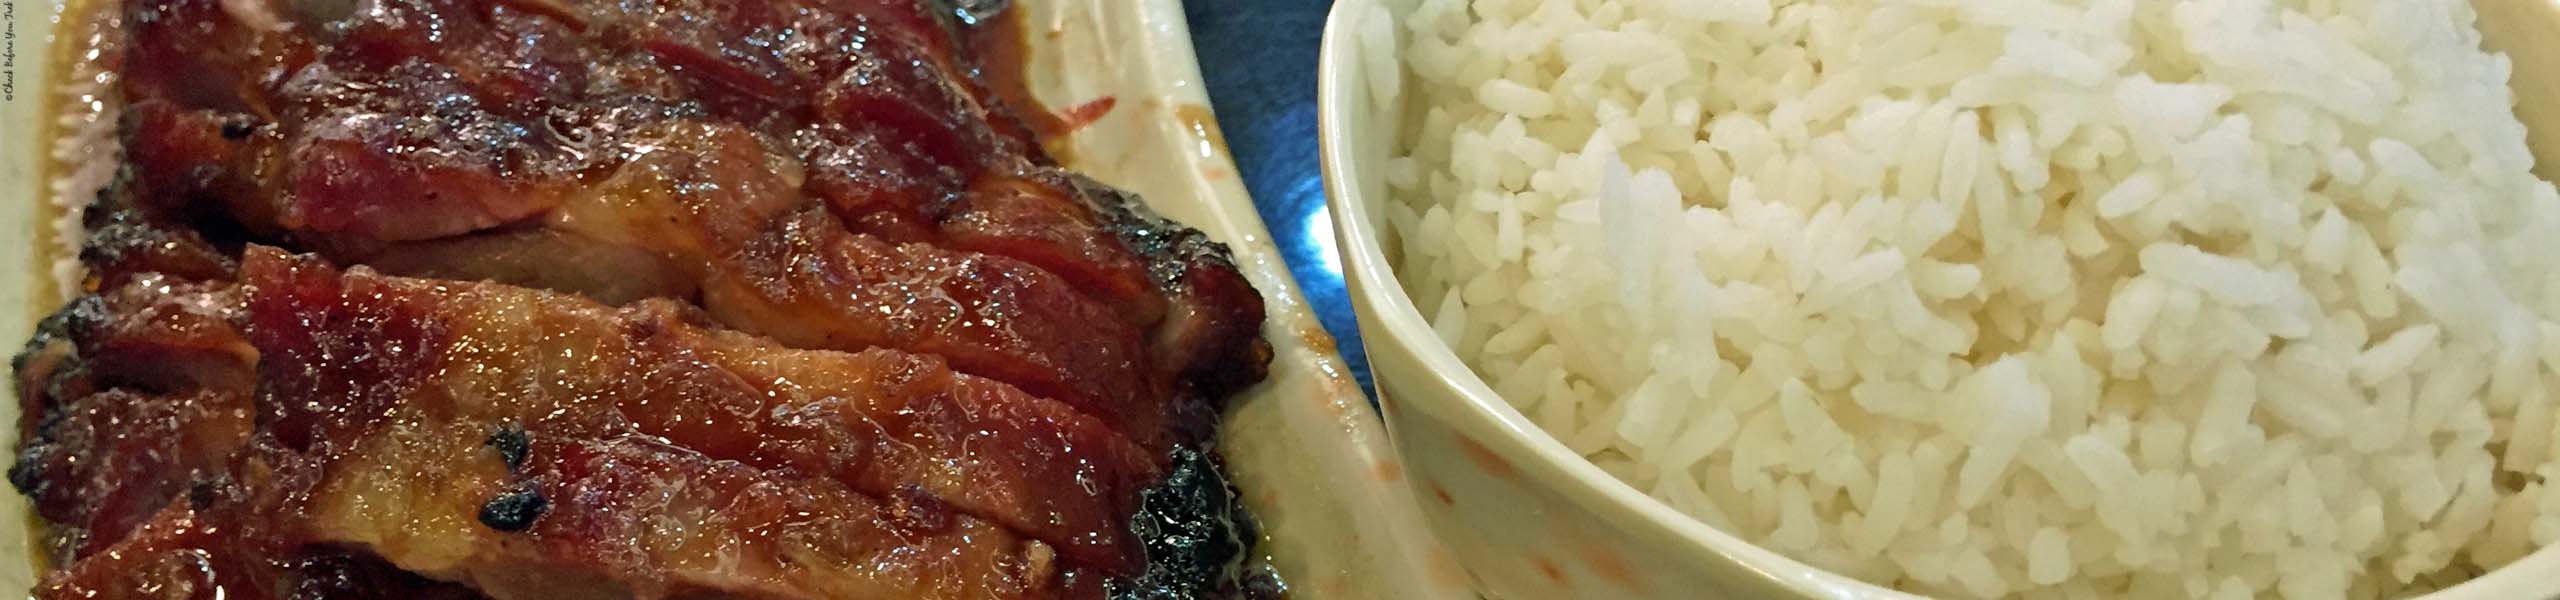 BBQ pork and rice at Hay Hay Kitchen - Wan Chai, Hong Kong, China